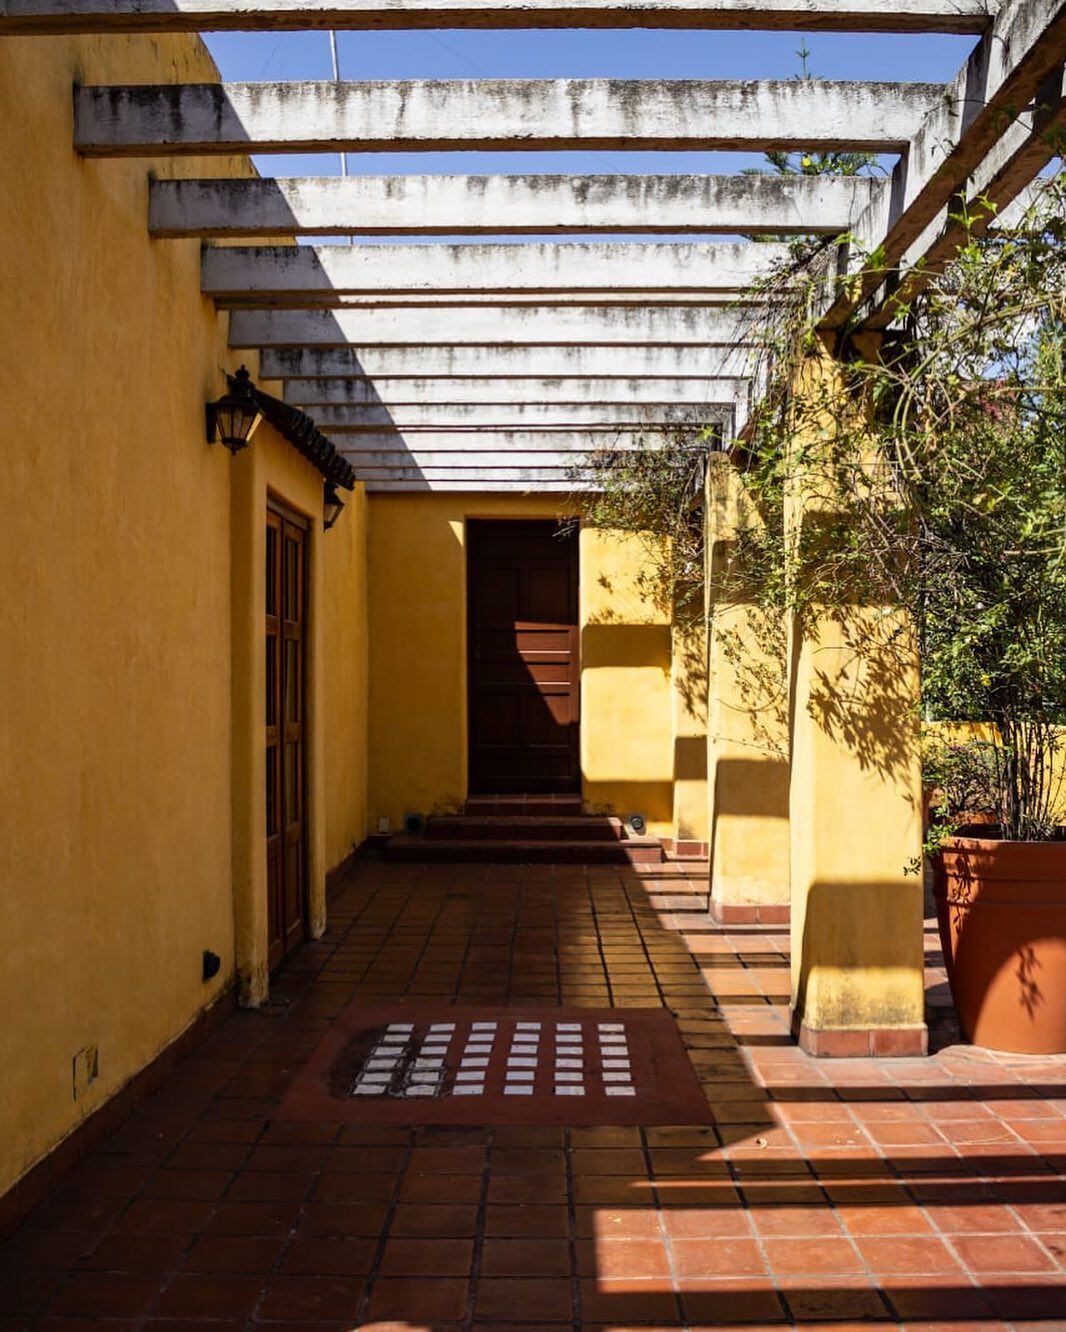 Uno de los patios de la Casa Efraín González Luna, del arquitecto mexicano Luis Barragán, en la ciudad de Guadalajara.